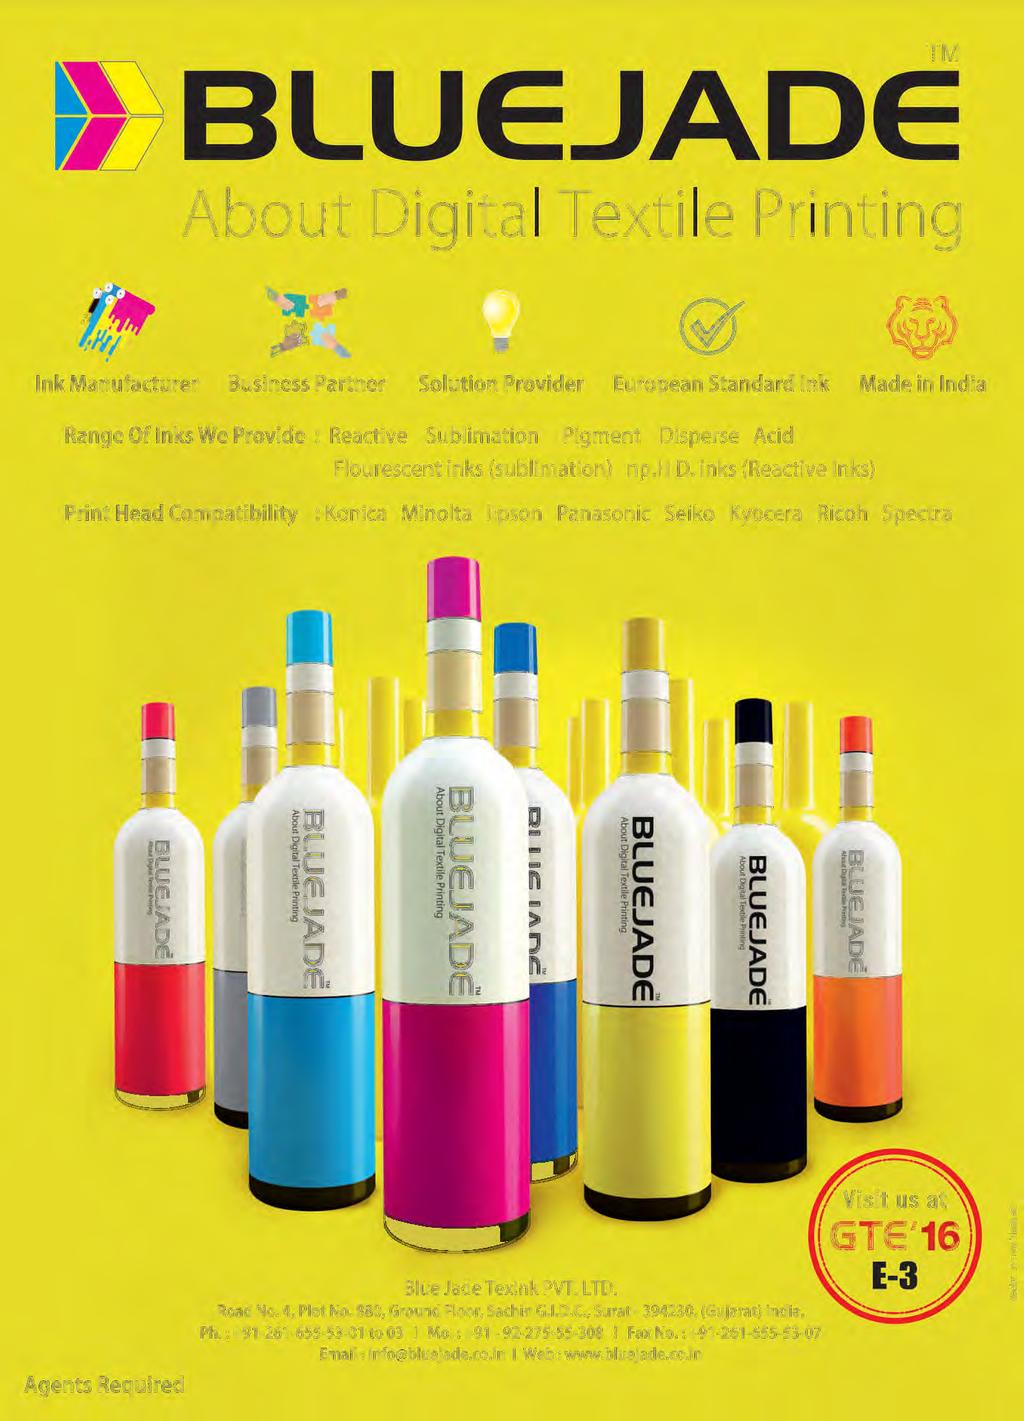 TM t~ BLUEJ DE About Digital Textile Printing Ink Manufacturer Business Partner Solution Provider European Standard Ink Made in India